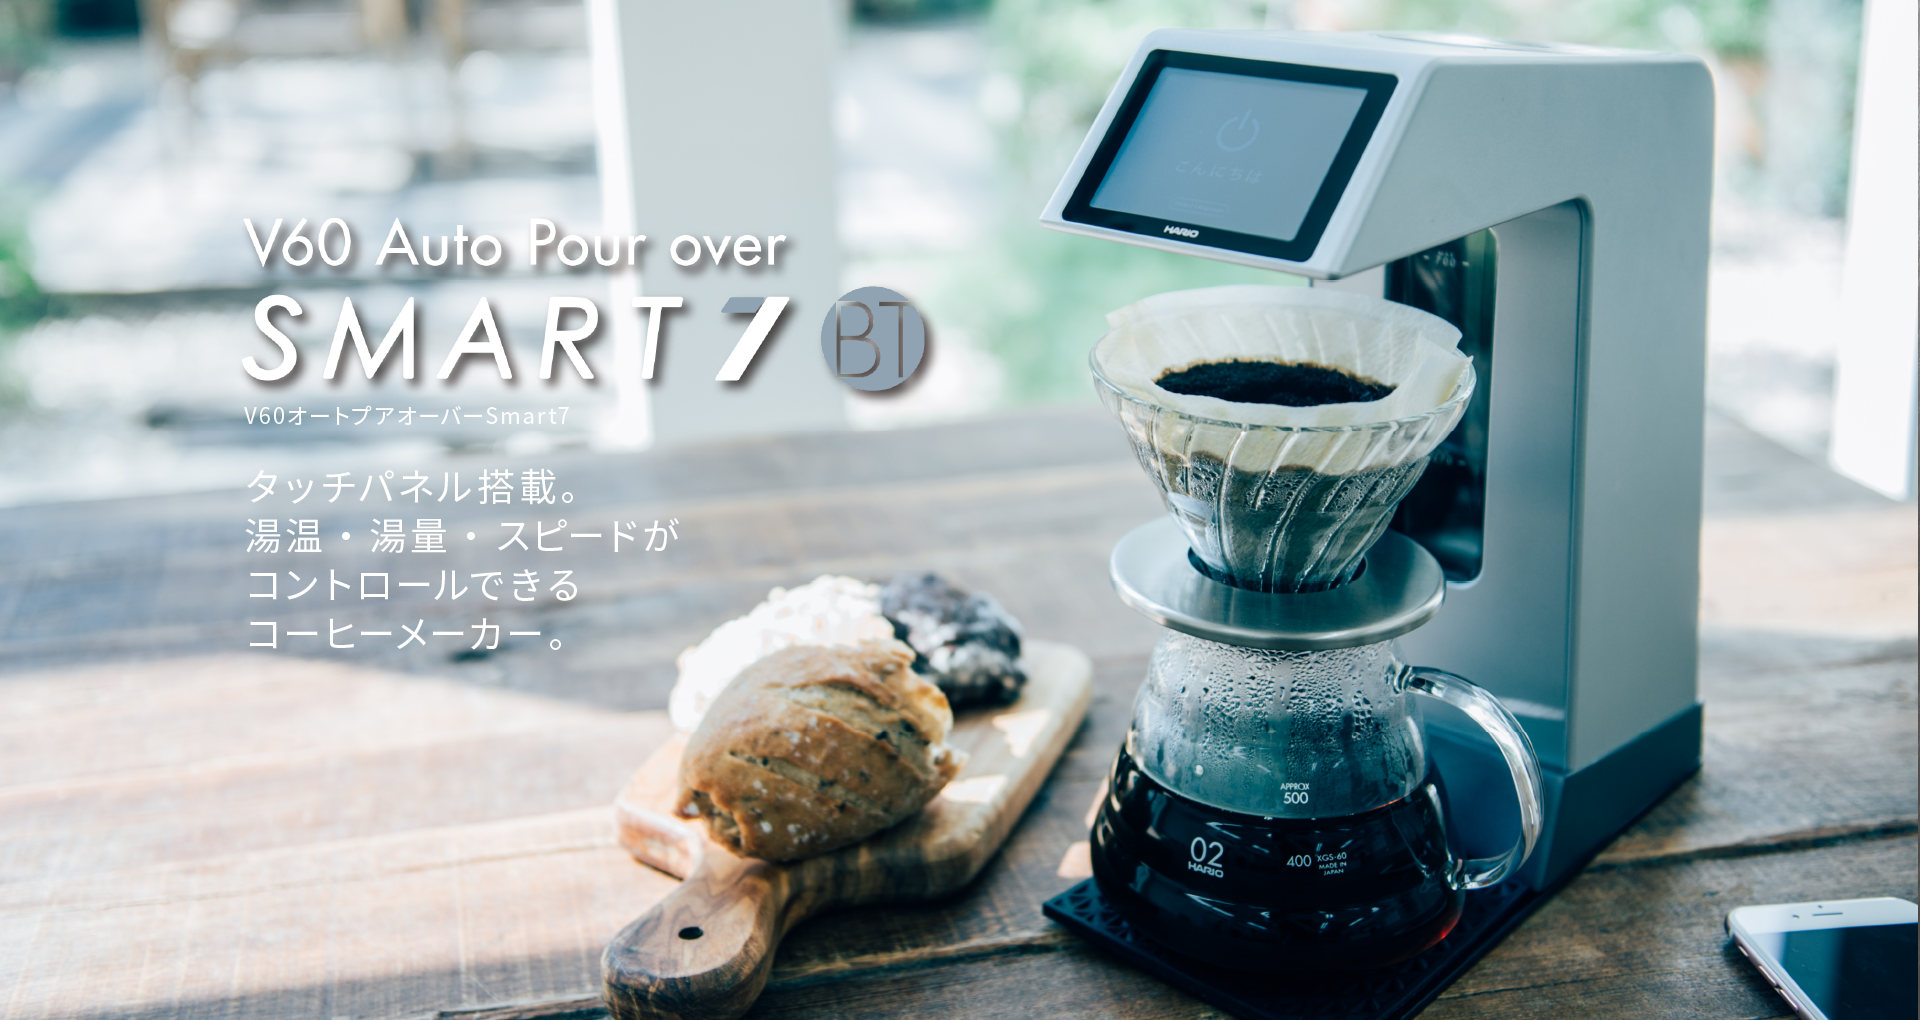 生活家電 コーヒーメーカー V60オートプアオーバー Smart7